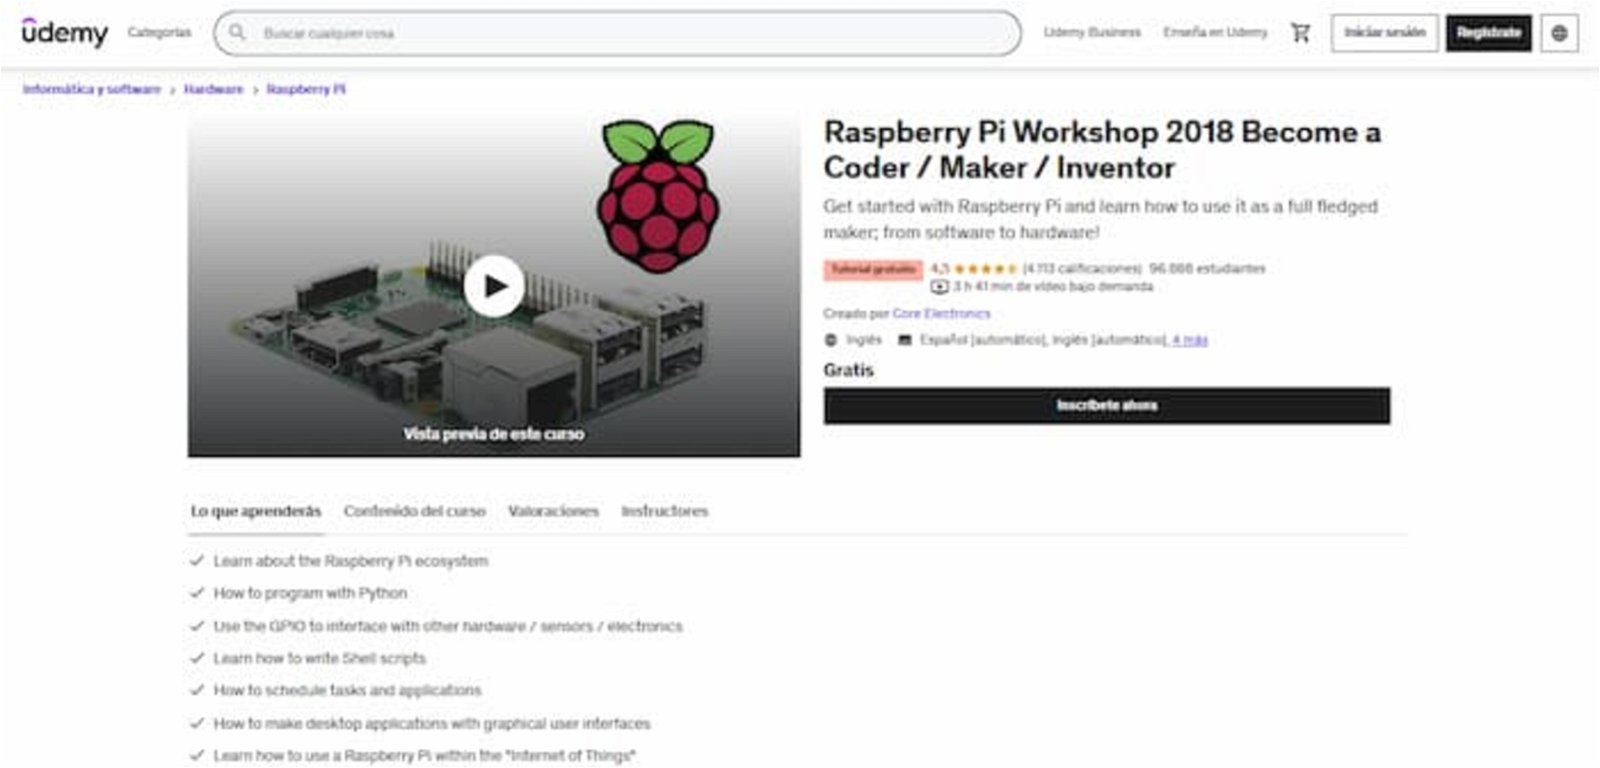 Aprende sobre el ecosistema Raspberry Pi, cómo programar con Python, cómo utilizar el microordenador en el IoT y mucho más con este curso de Udemy